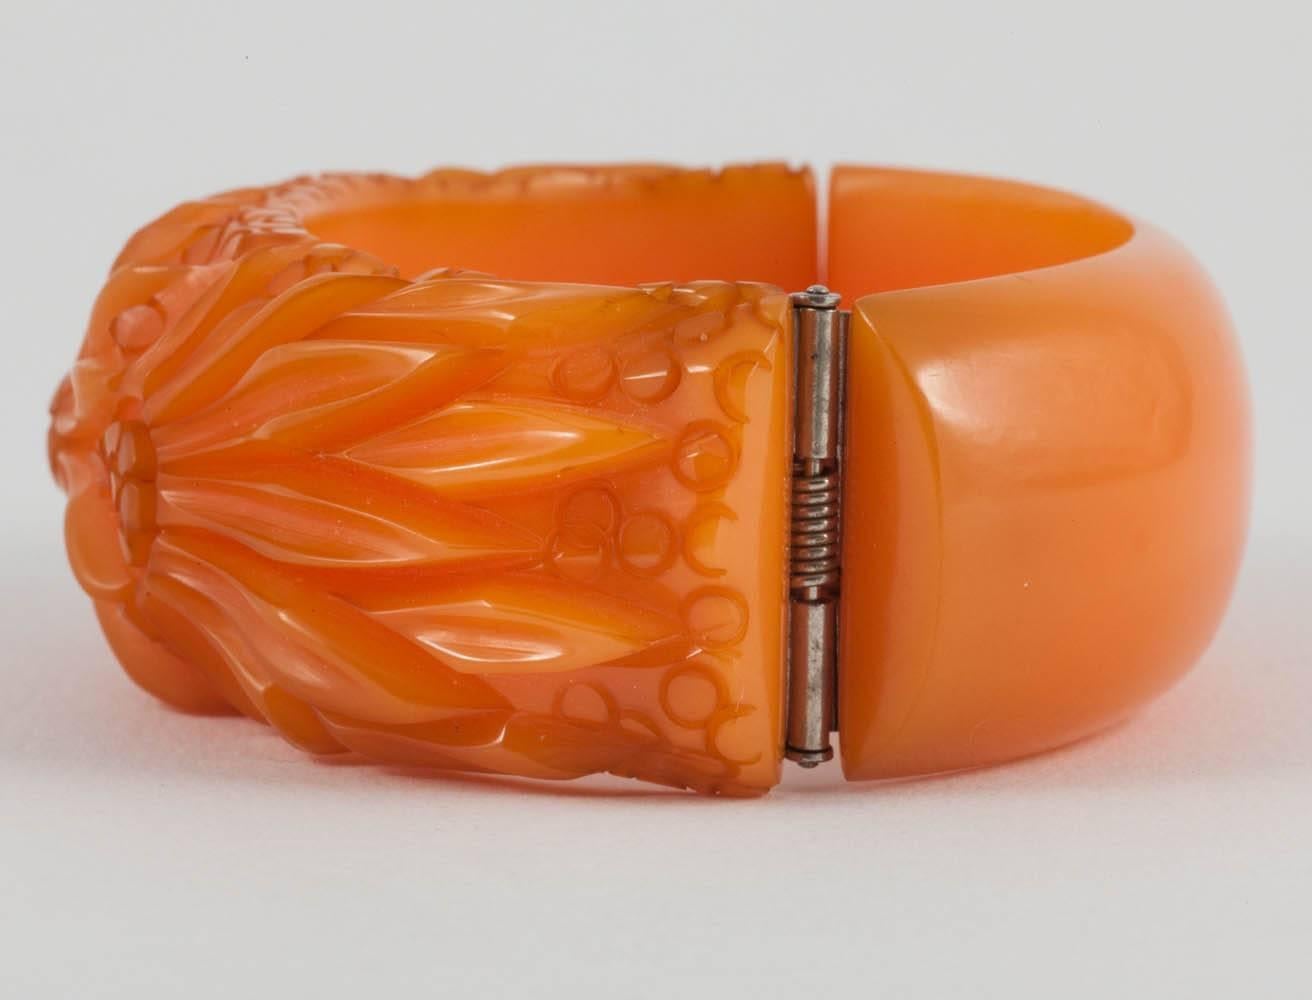 Ein wunderschönes, handgeschnitztes Bakelit-Armband aus den 1930er Jahren in einer sanften Bernsteinfarbe
Der Scharniermechanismus funktioniert perfekt und sicher.
Dies ist einer von fünf ähnlichen Bakelit-Armreifen, die verkauft werden (alle Bilder